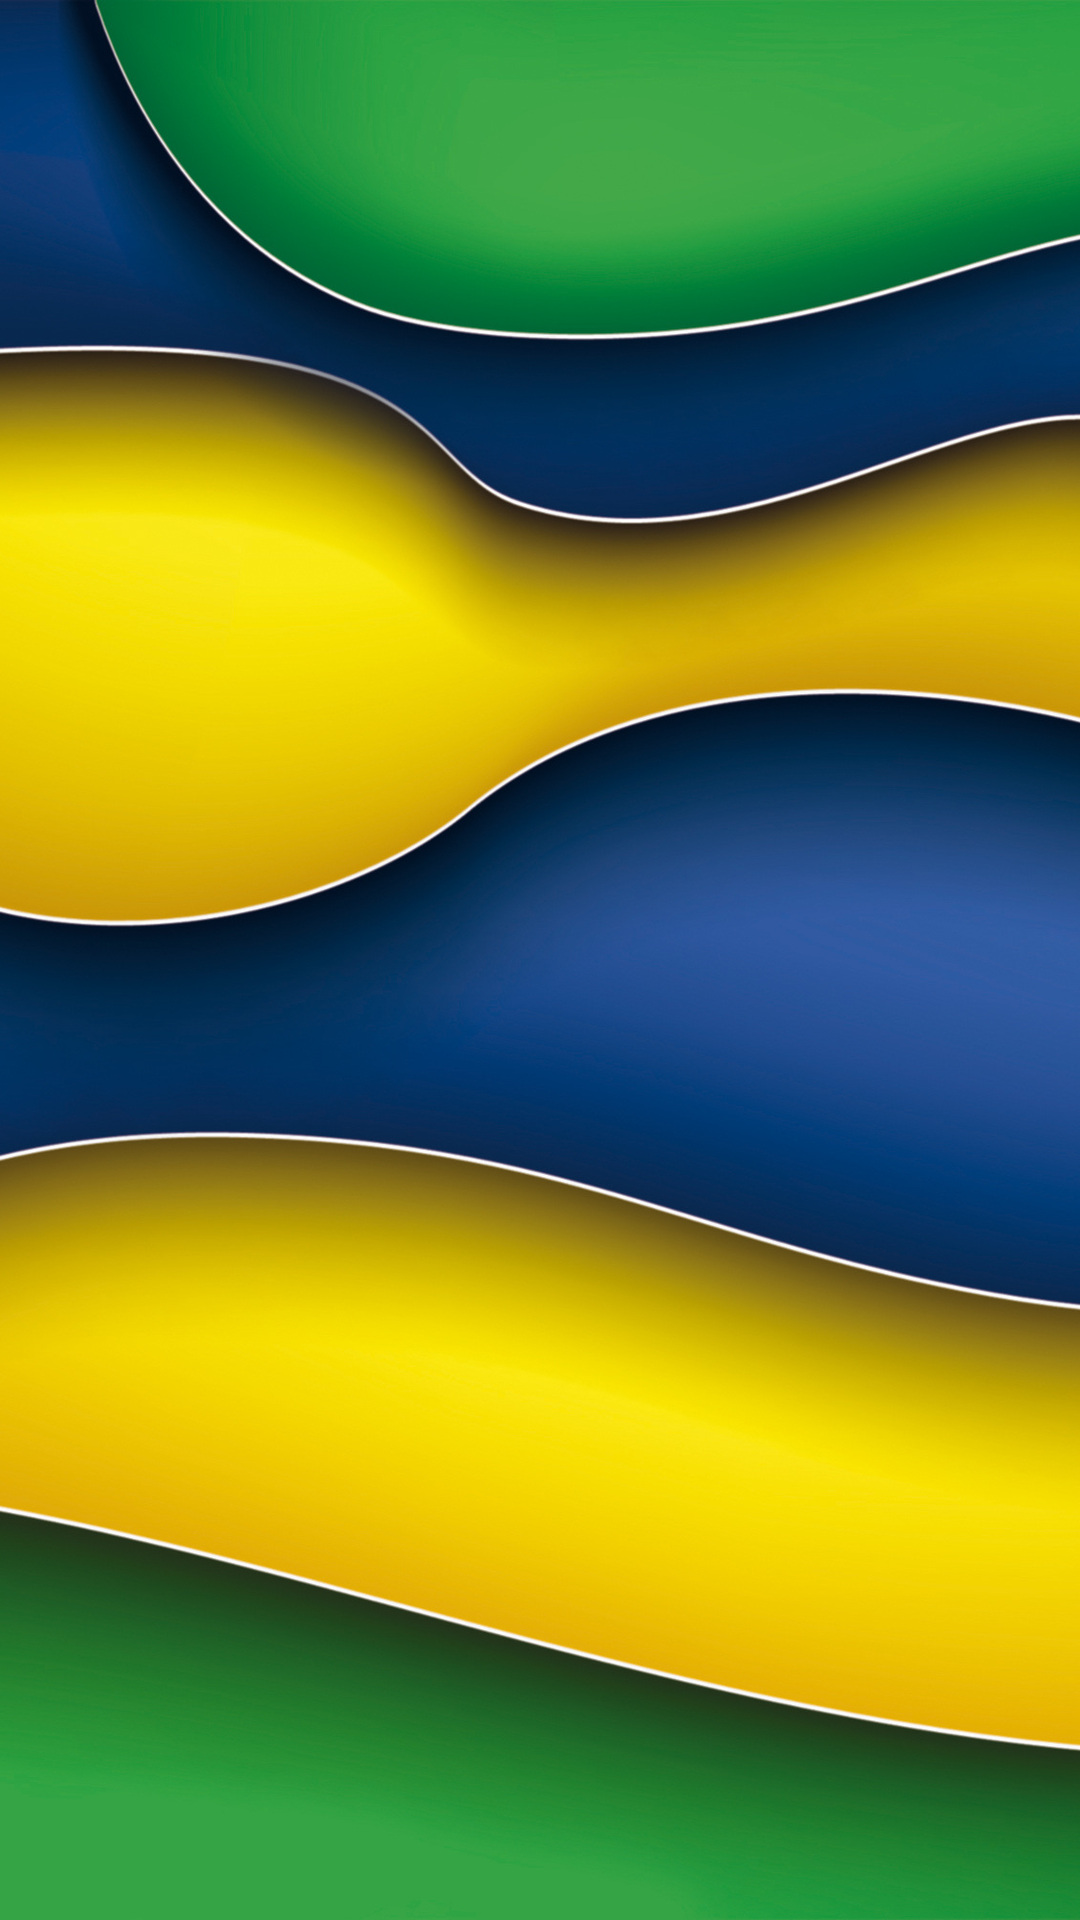 zedge fonds d'écran hd 1080p,bleu,jaune,vert,ligne,couleur